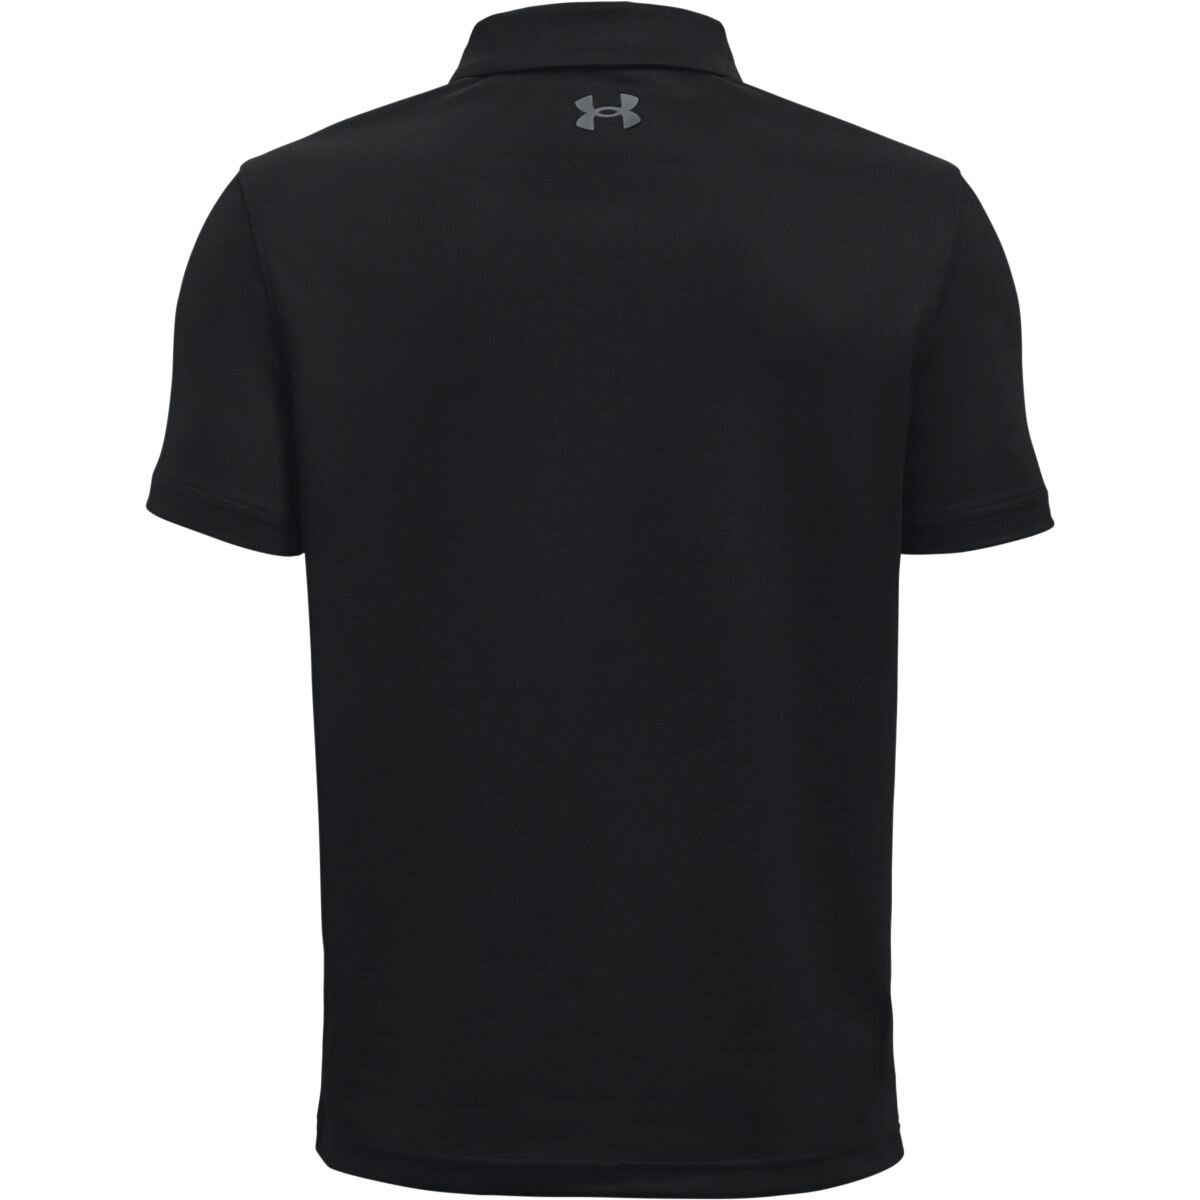 Dìtské triko Under Armour UA Performance Polo BLACK, velikost L, XL - zvìtšit obrázek